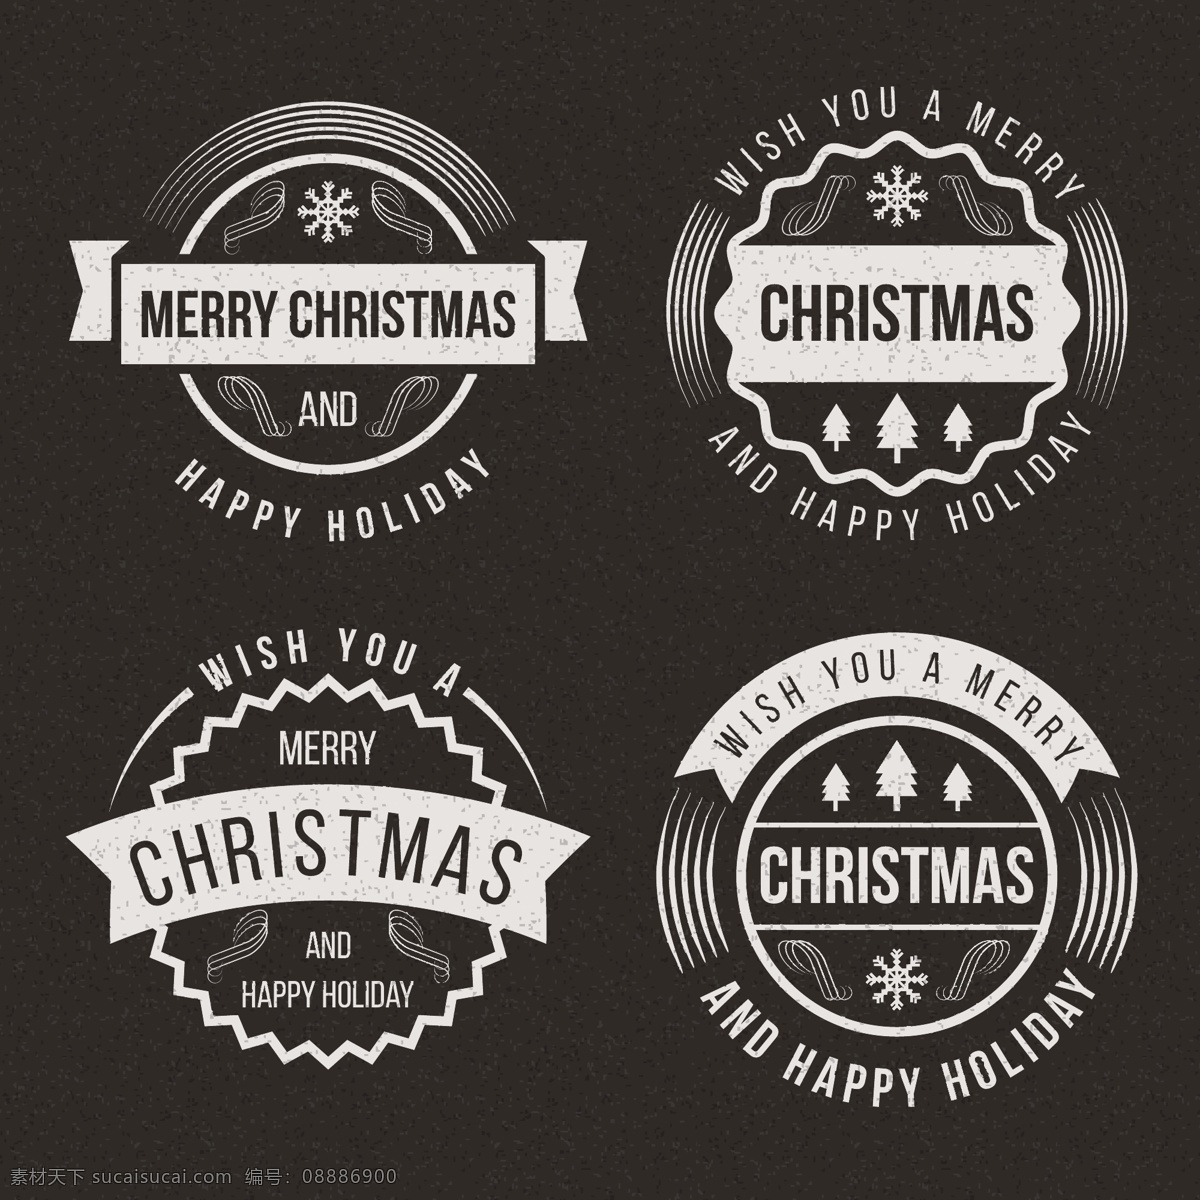 款 精美 圣诞 节日 标签 元素 节日标签 圆形标签 圣诞庆典 创意标签下载 标签设计 矢量标签 英文标签 圣诞节日元素 圣诞素材